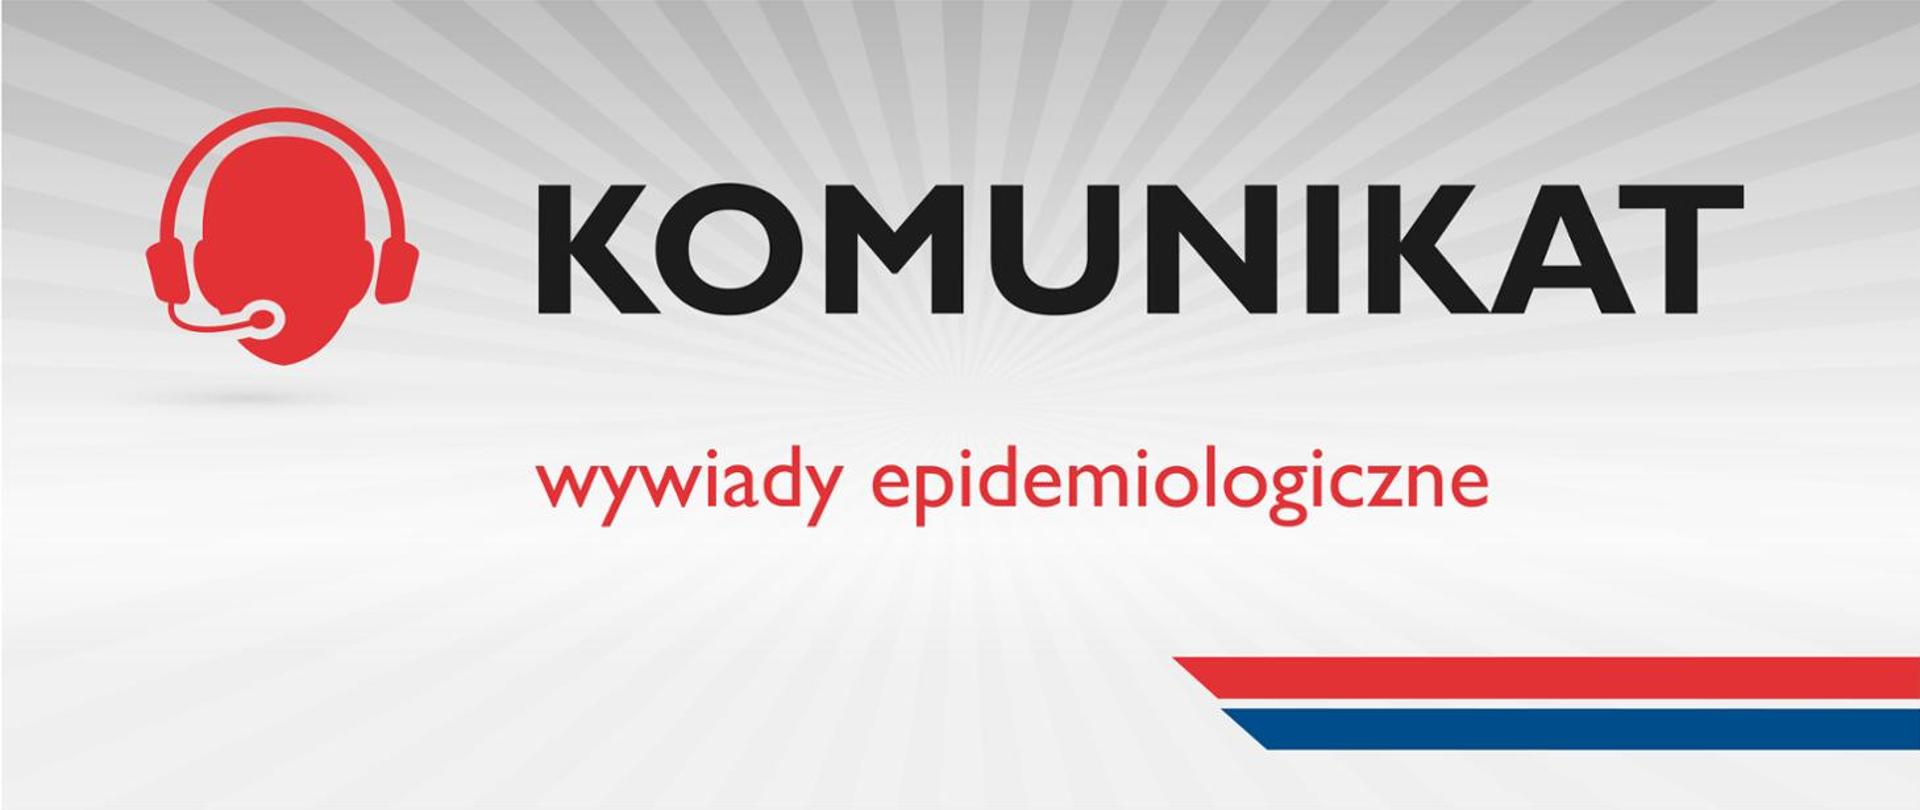 Wywiady epidemiologiczne związane z monitorowaniem sytuacji epidemiologicznej dot. COVID-19 nadal prowadzone